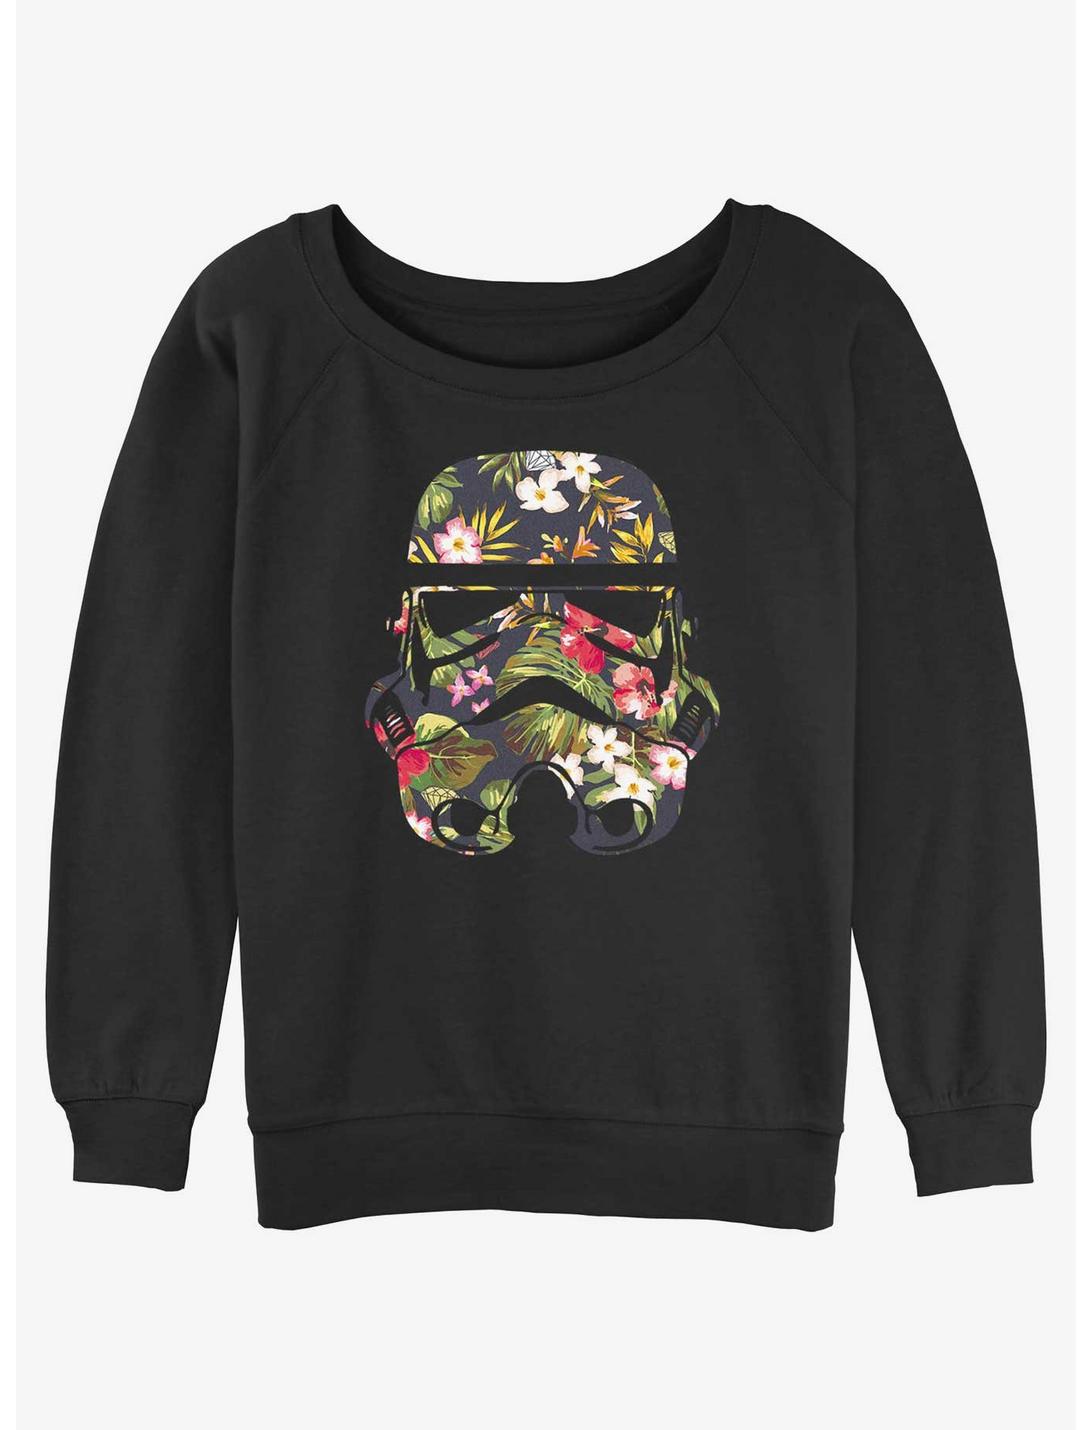 Star Wars Storm Trooper Floral Girls Slouchy Sweatshirt, BLACK, hi-res